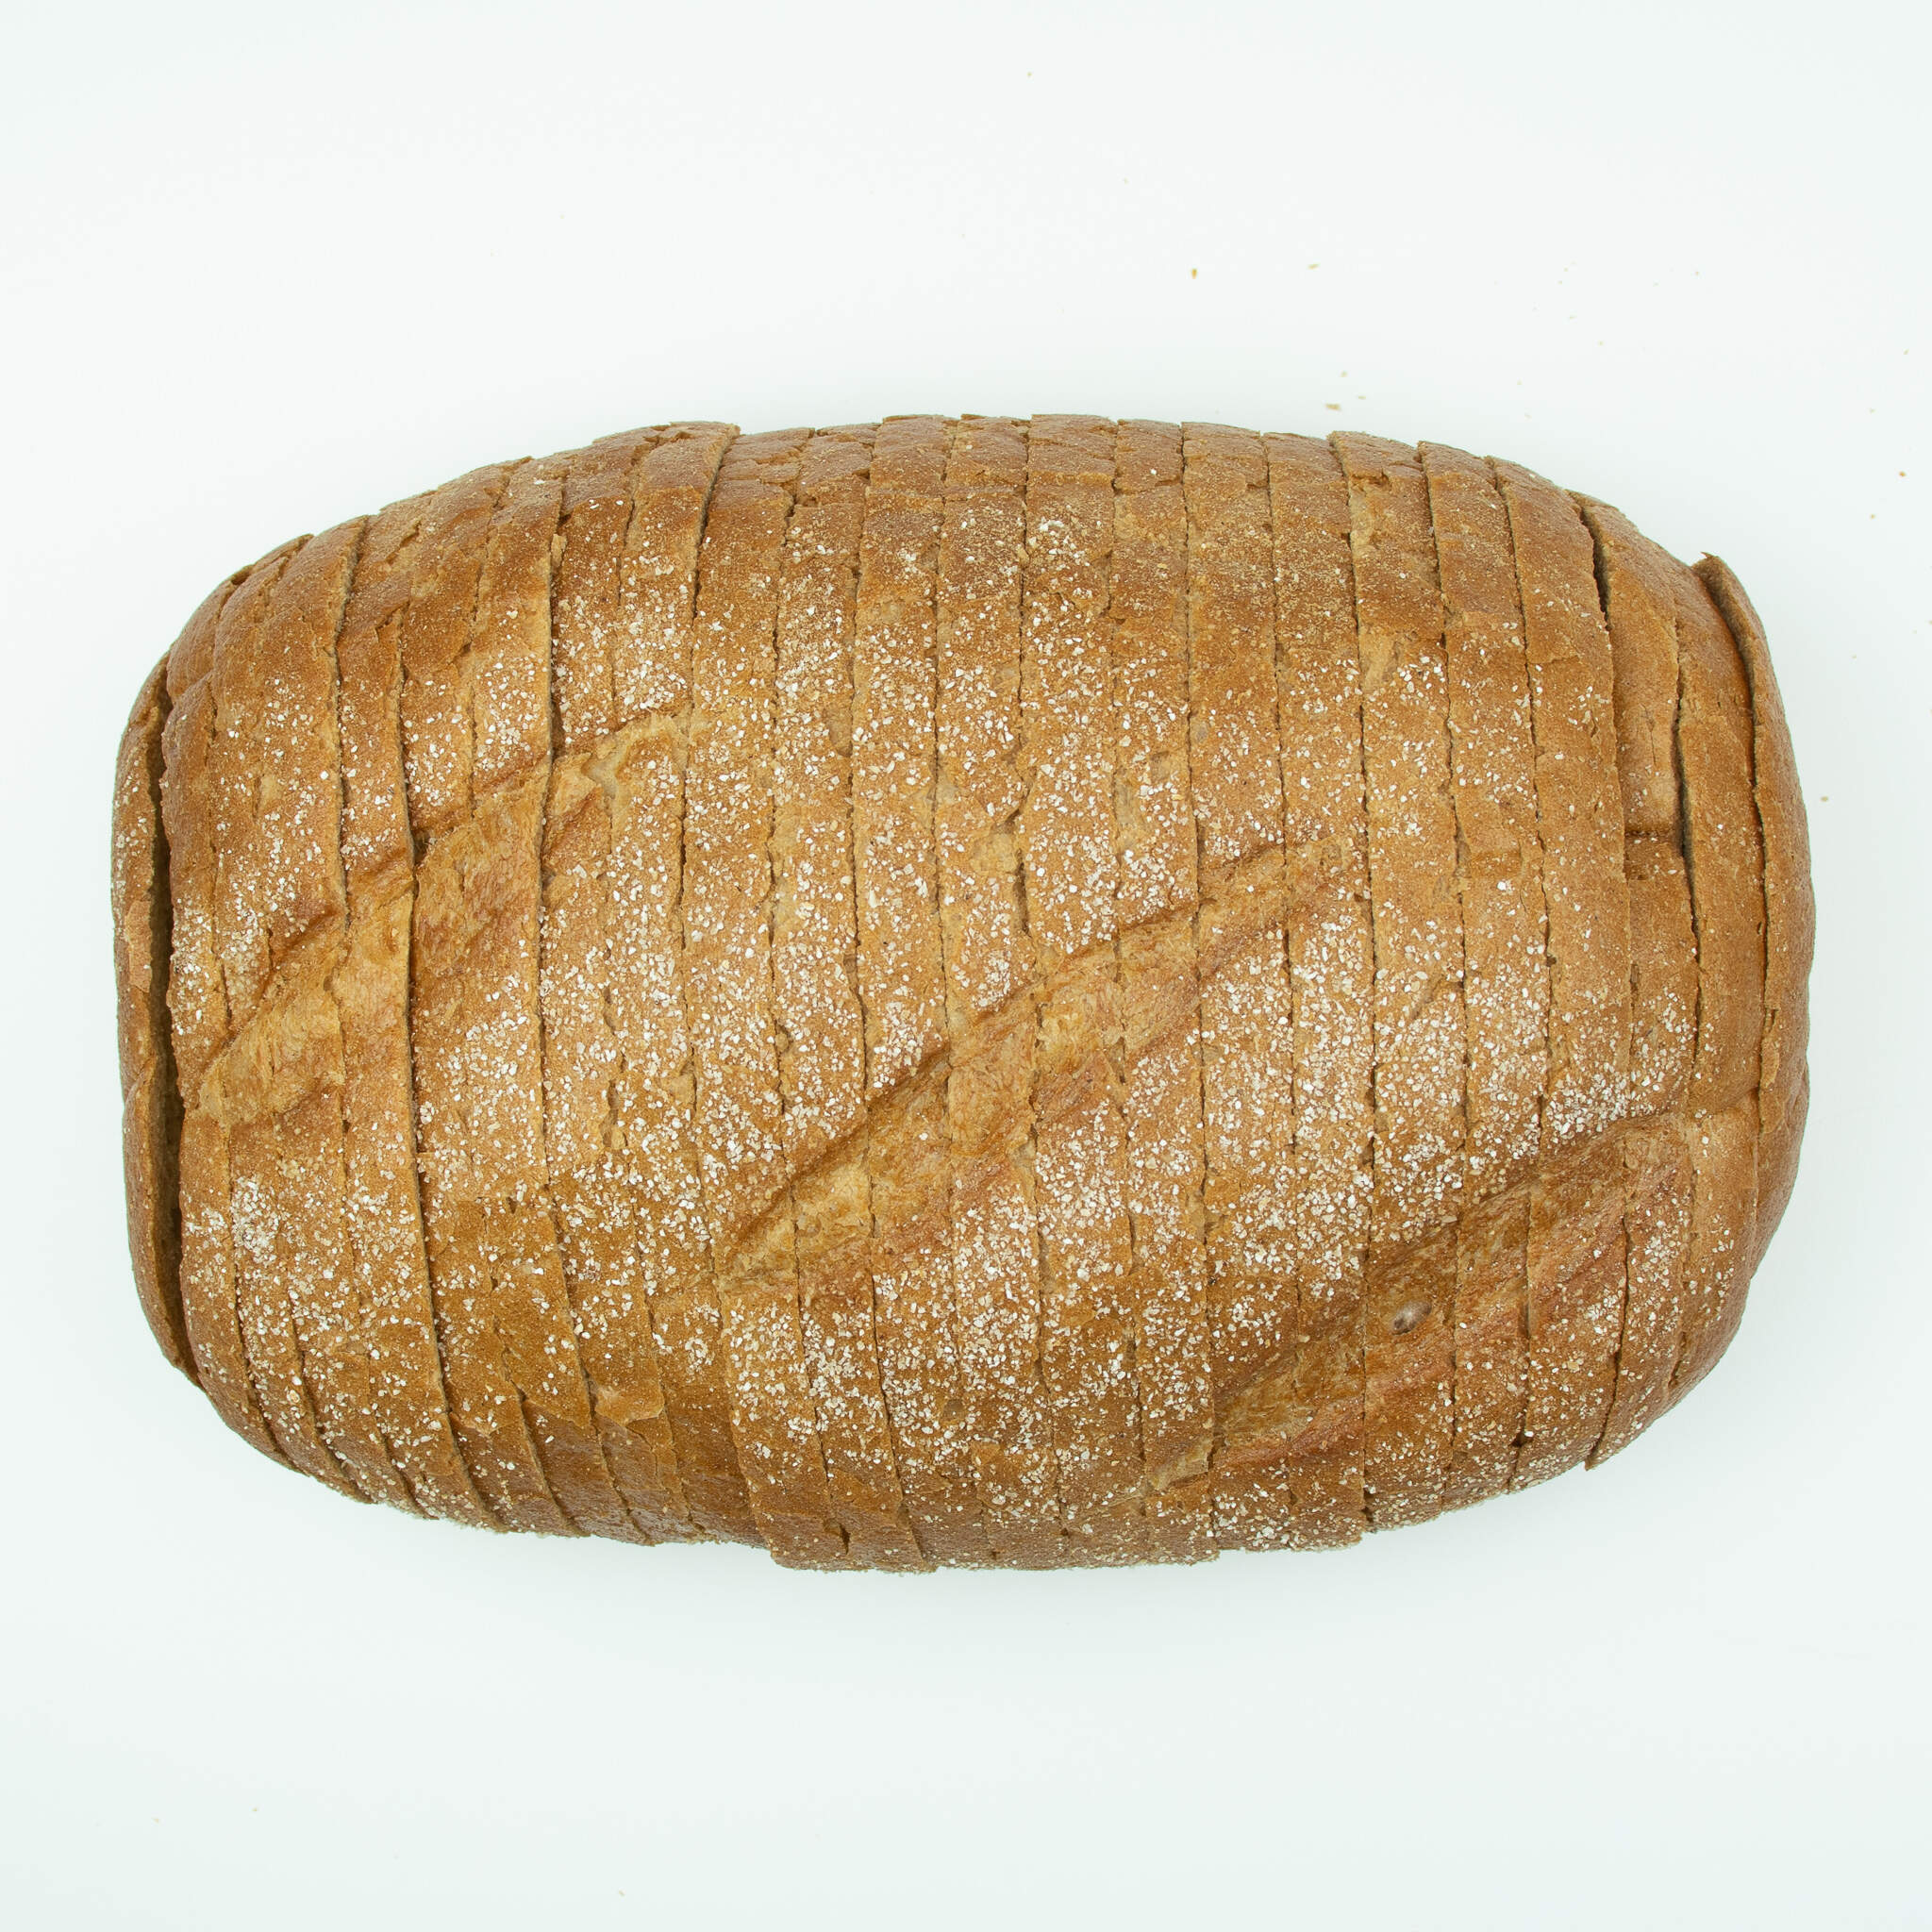 50% Rye Bread 450g